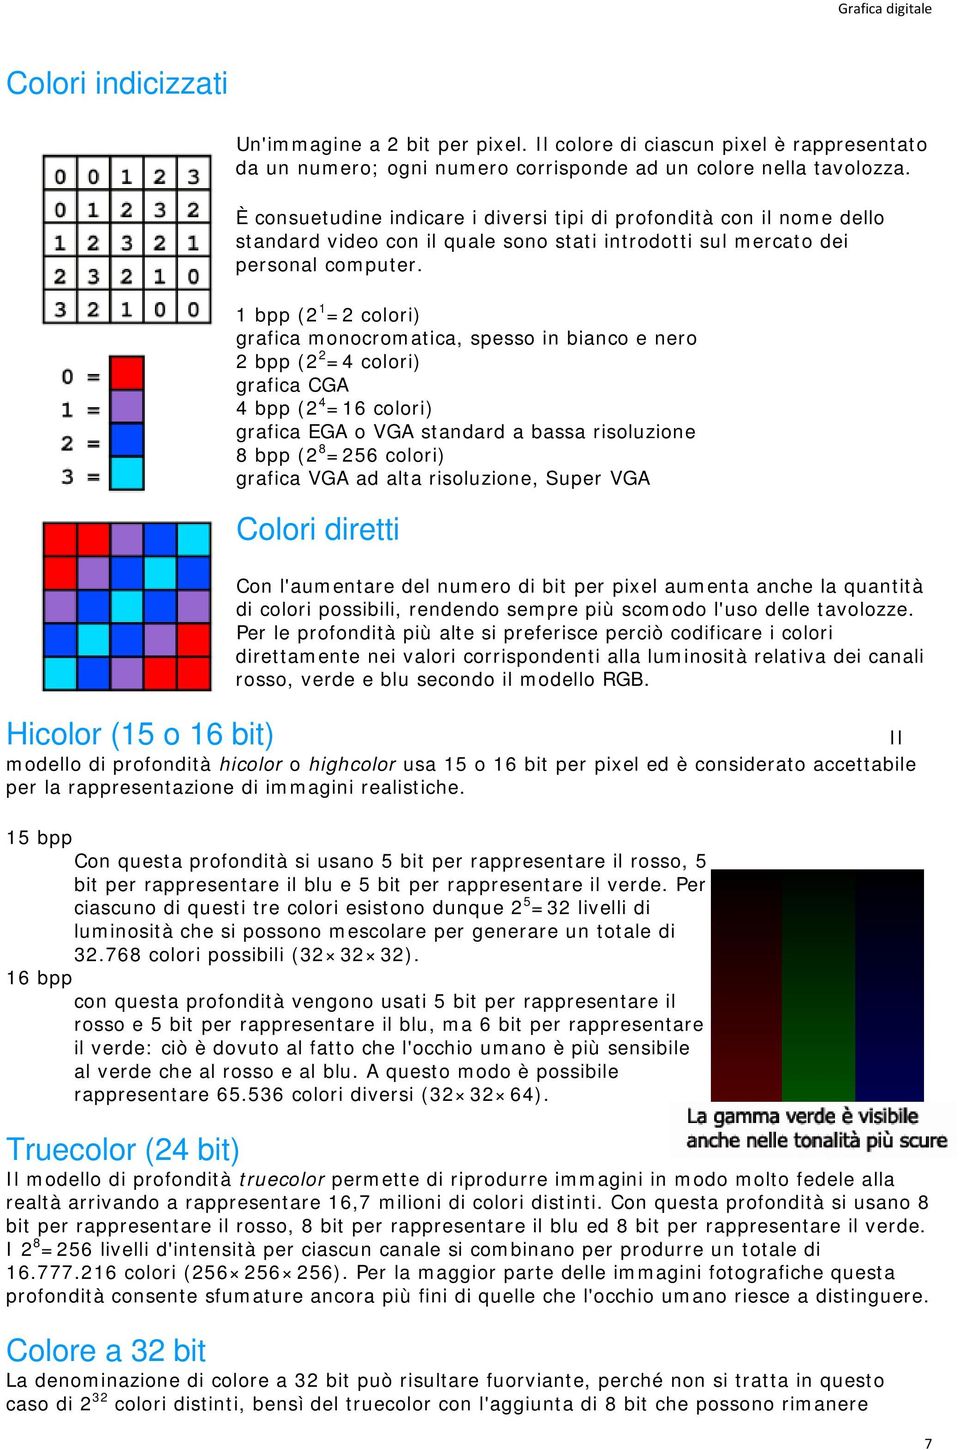 1 bpp (2 1 =2 colori) grafica monocromatica, spesso in bianco e nero 2 bpp (2 2 =4 colori) grafica CGA 4 bpp (2 4 =16 colori) grafica EGA o VGA standard a bassa risoluzione 8 bpp (2 8 =256 colori)